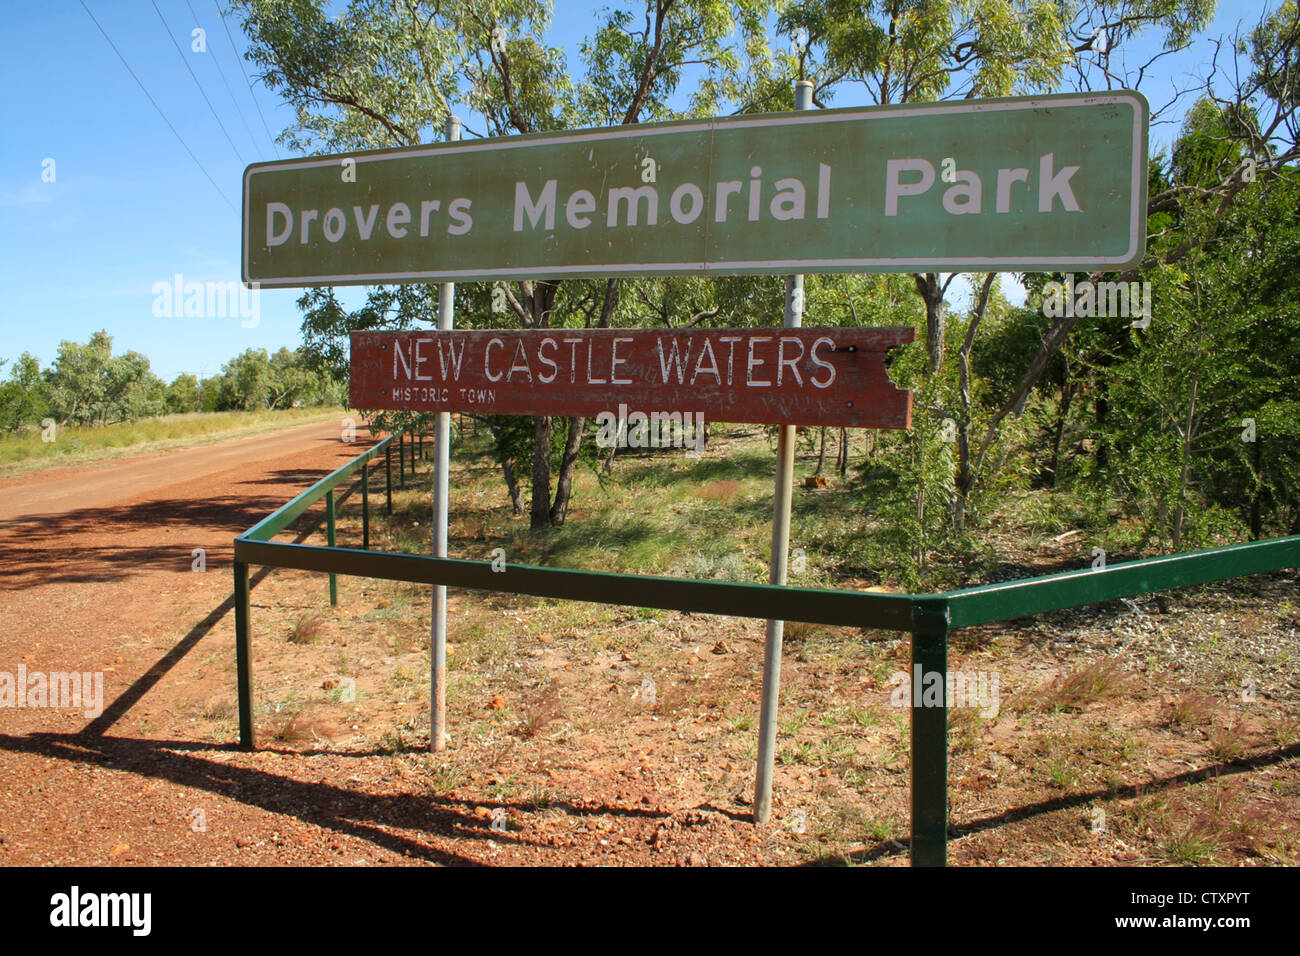 Drover Memorial Park, New Castle acque segno. Australia Foto Stock